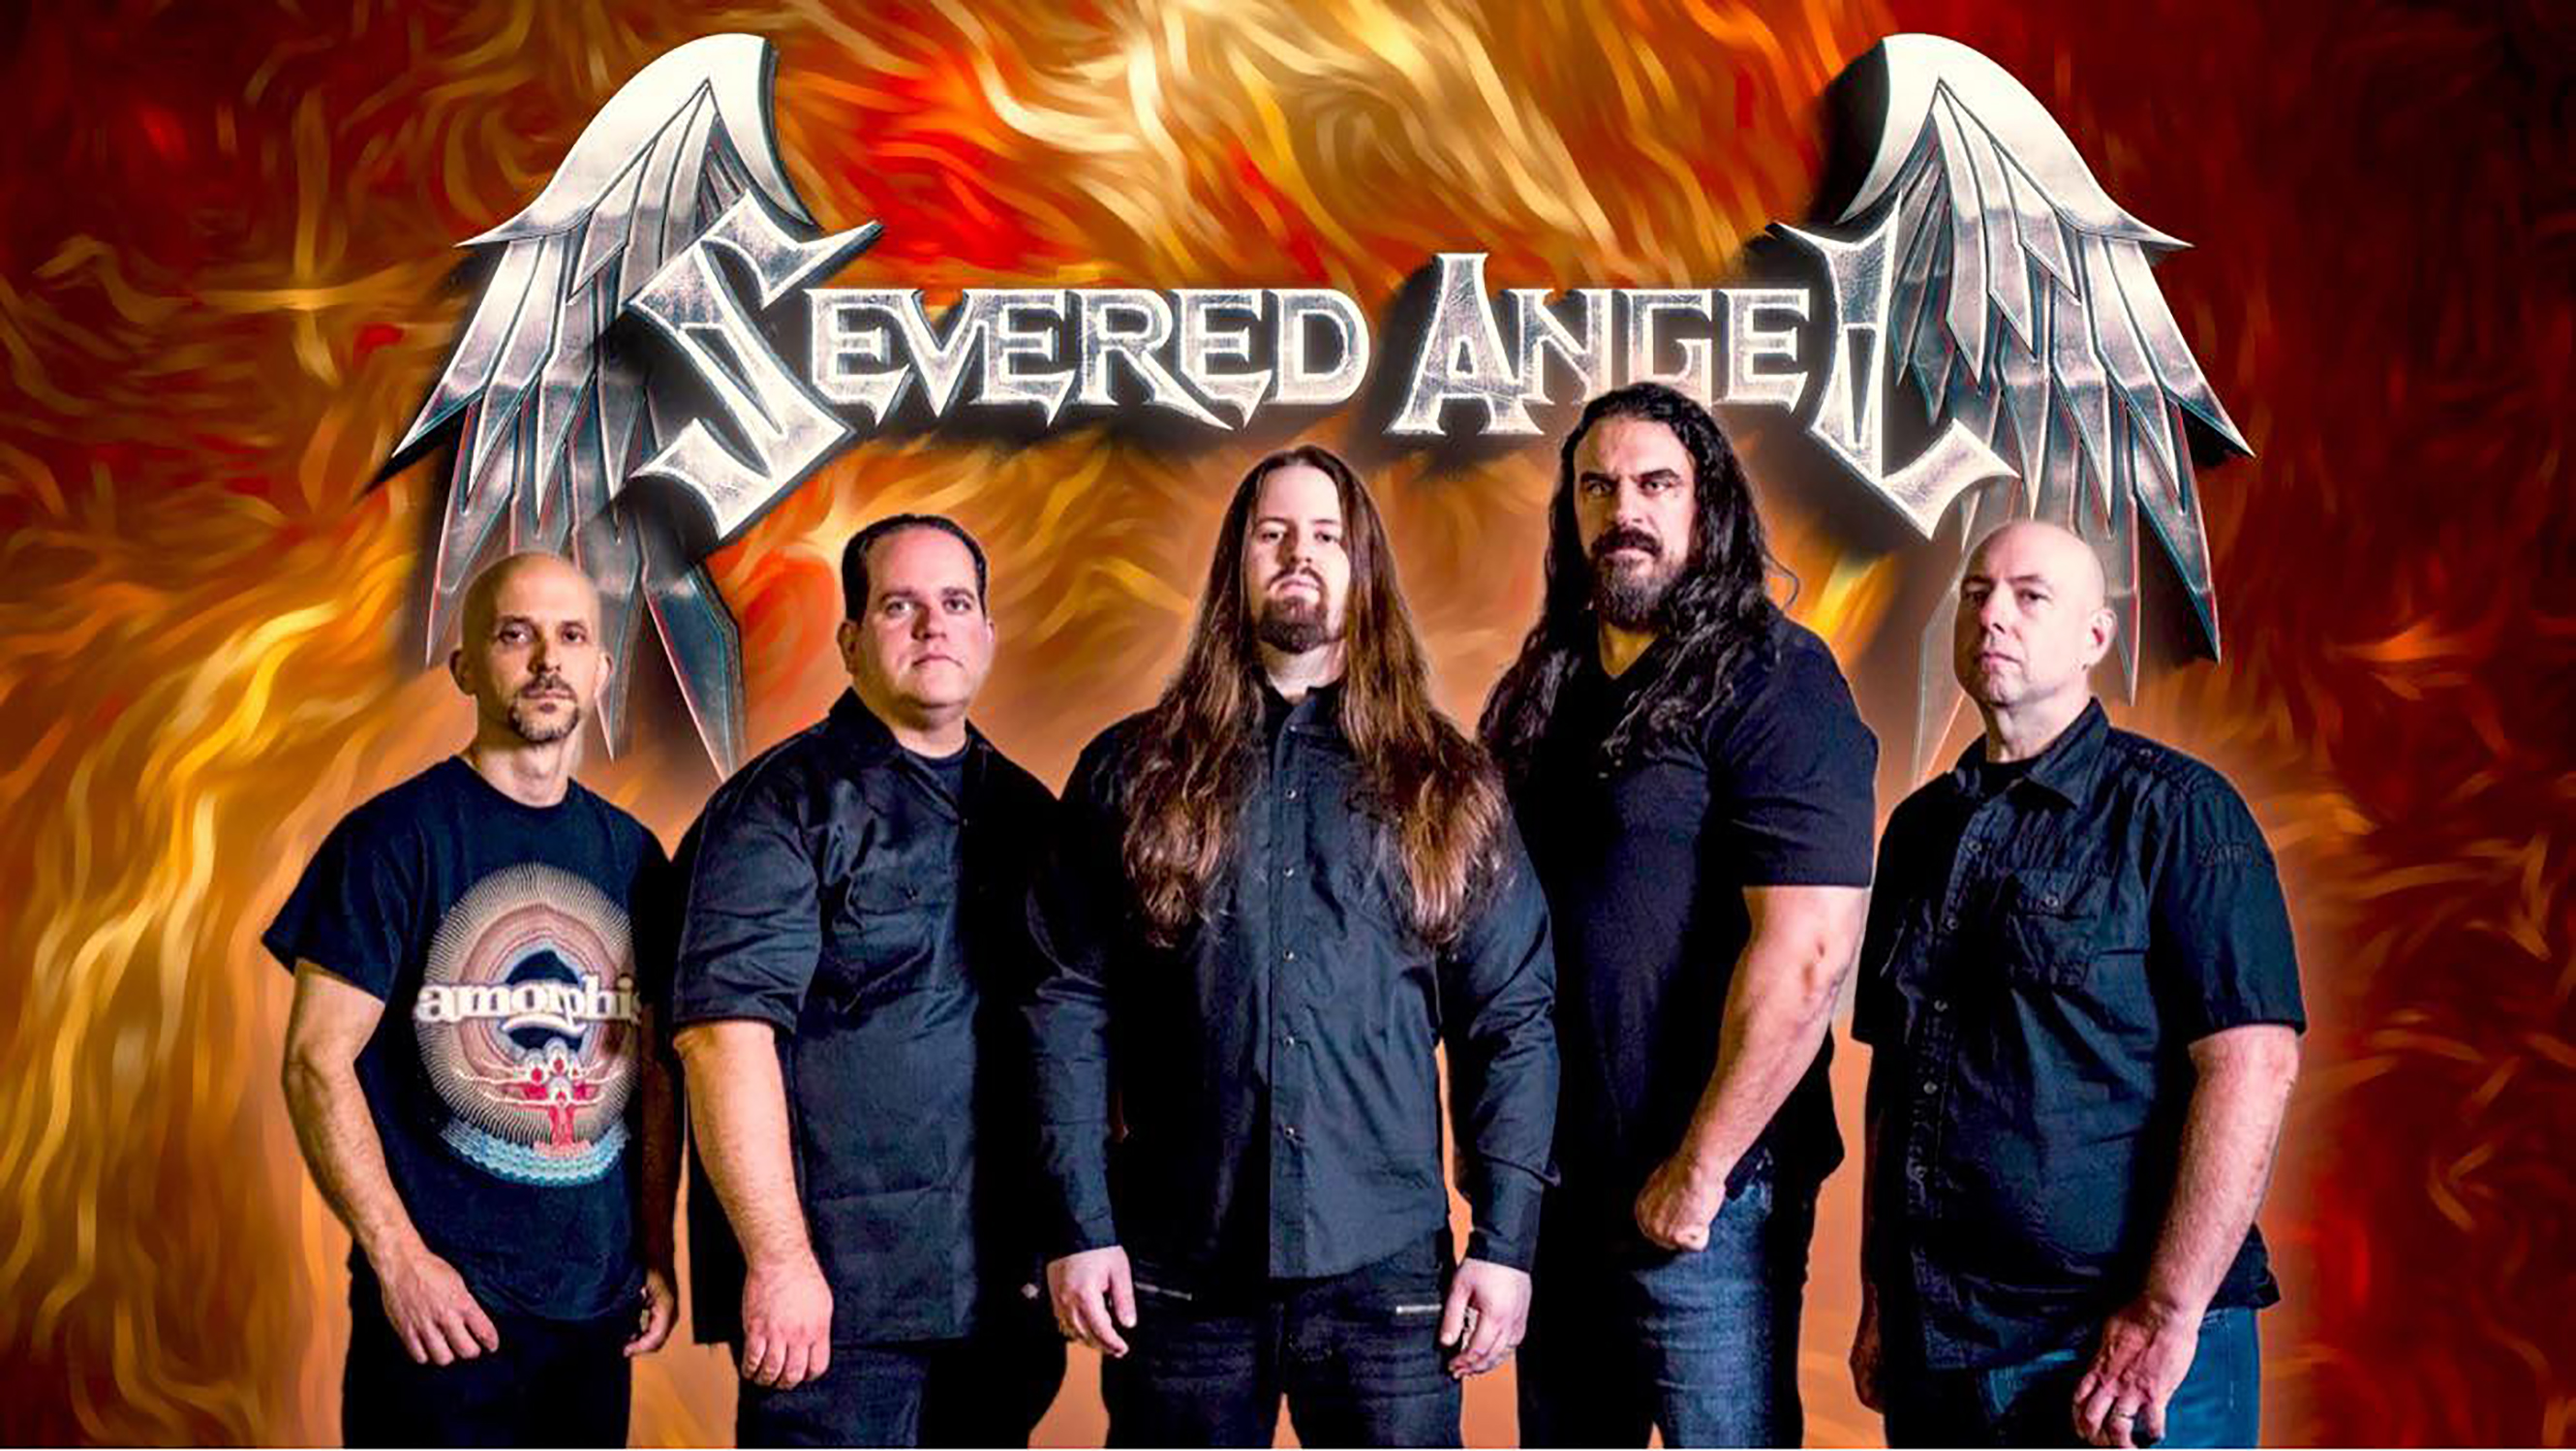 Severed Angel Band photo.jpg